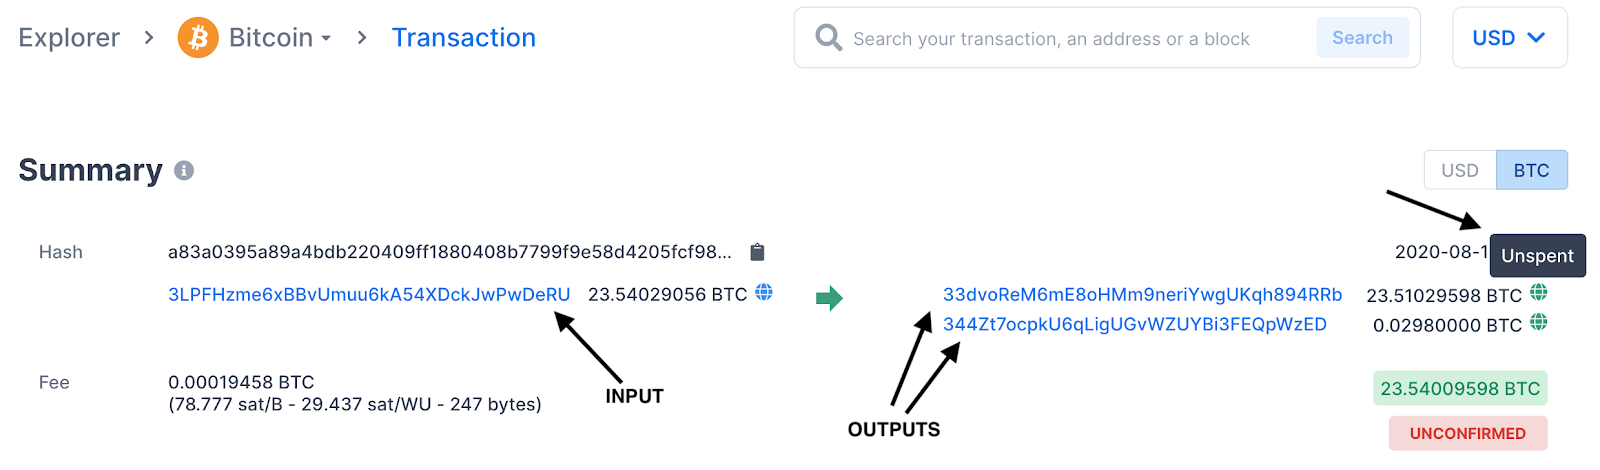 Exemple d'una transacció de Bitcoin que mostra les seves entrades i sortides